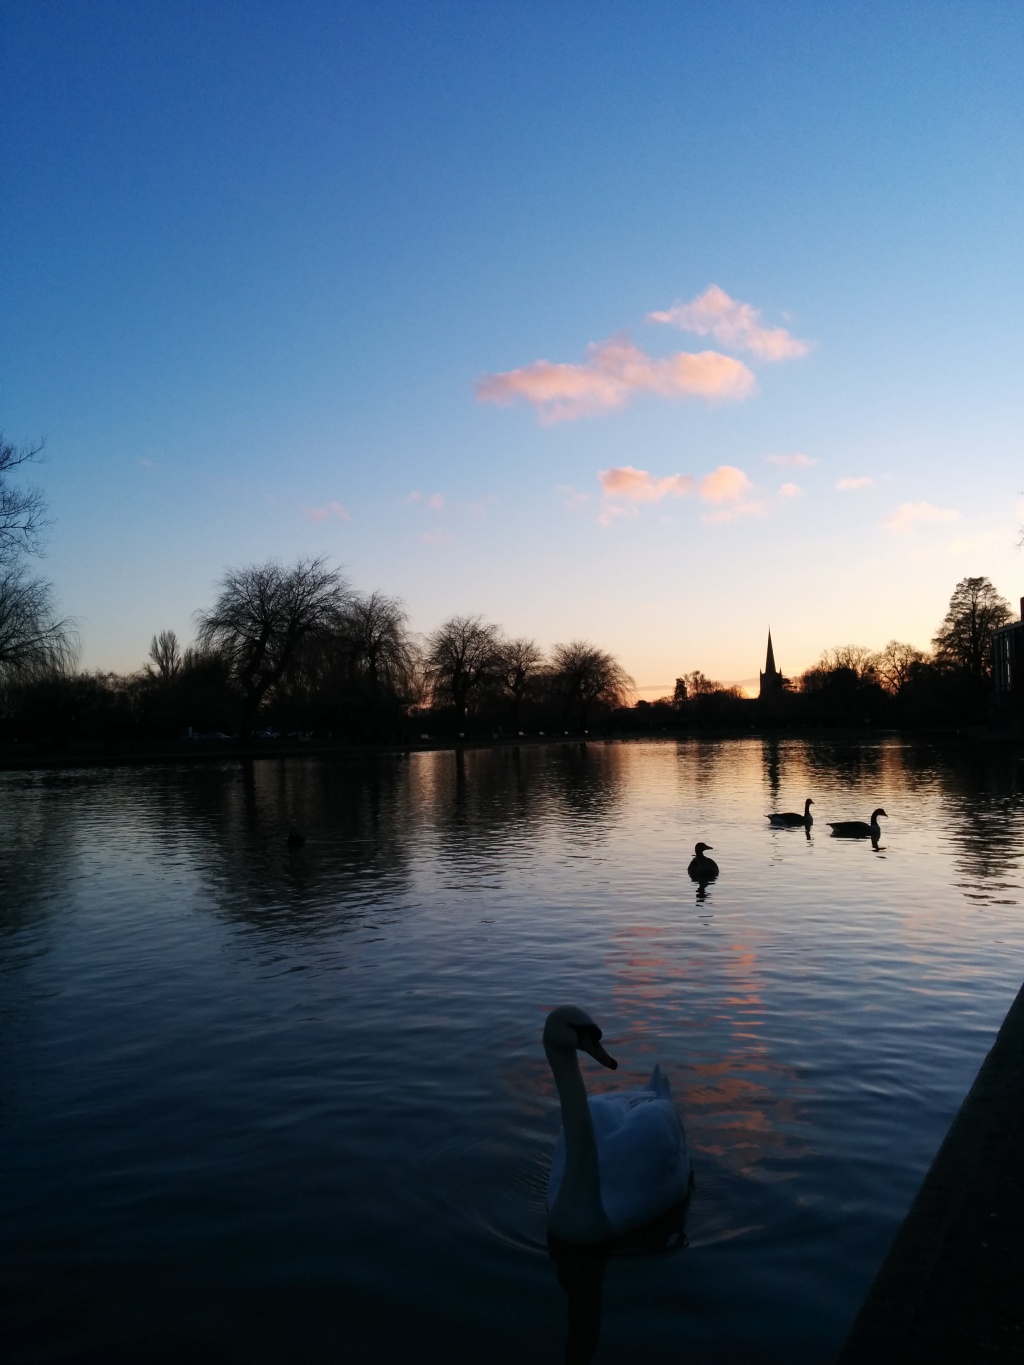 The Swan in Stratford